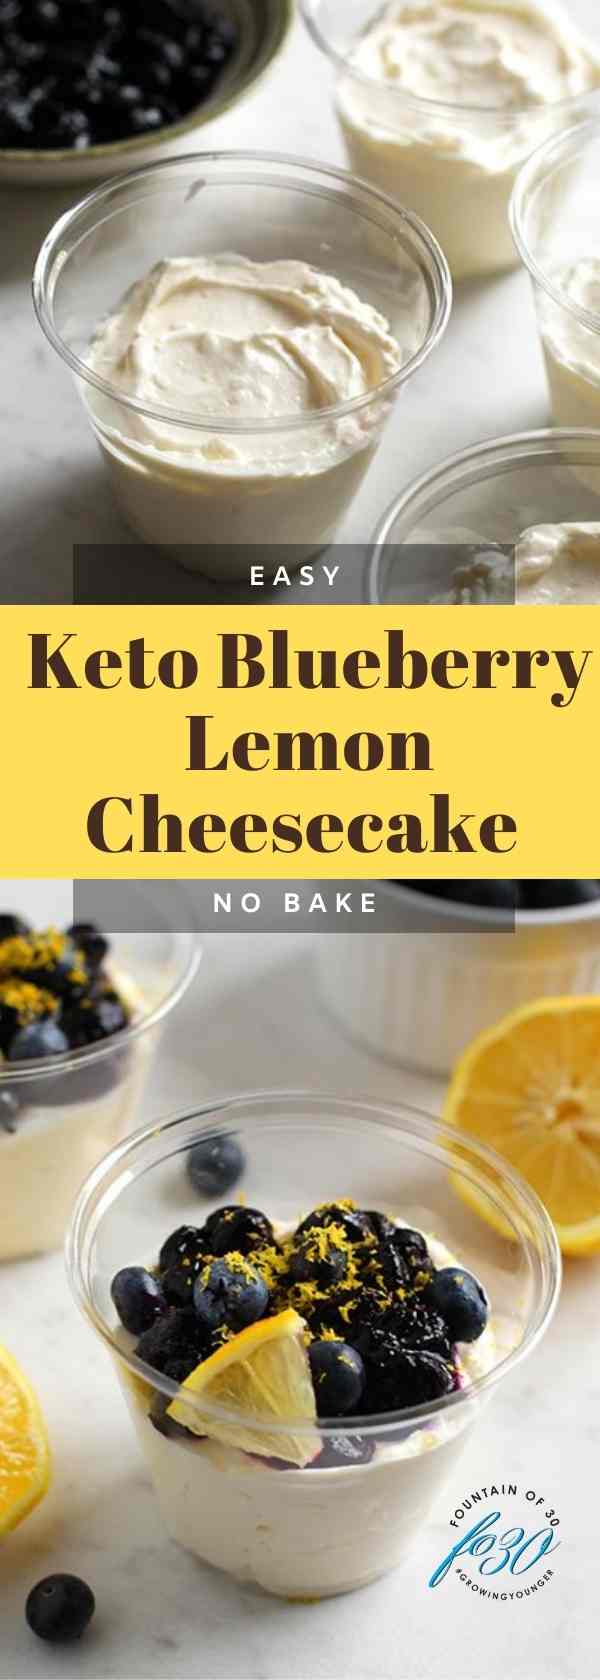 keto blueberry lemon cheesecake fountainof30